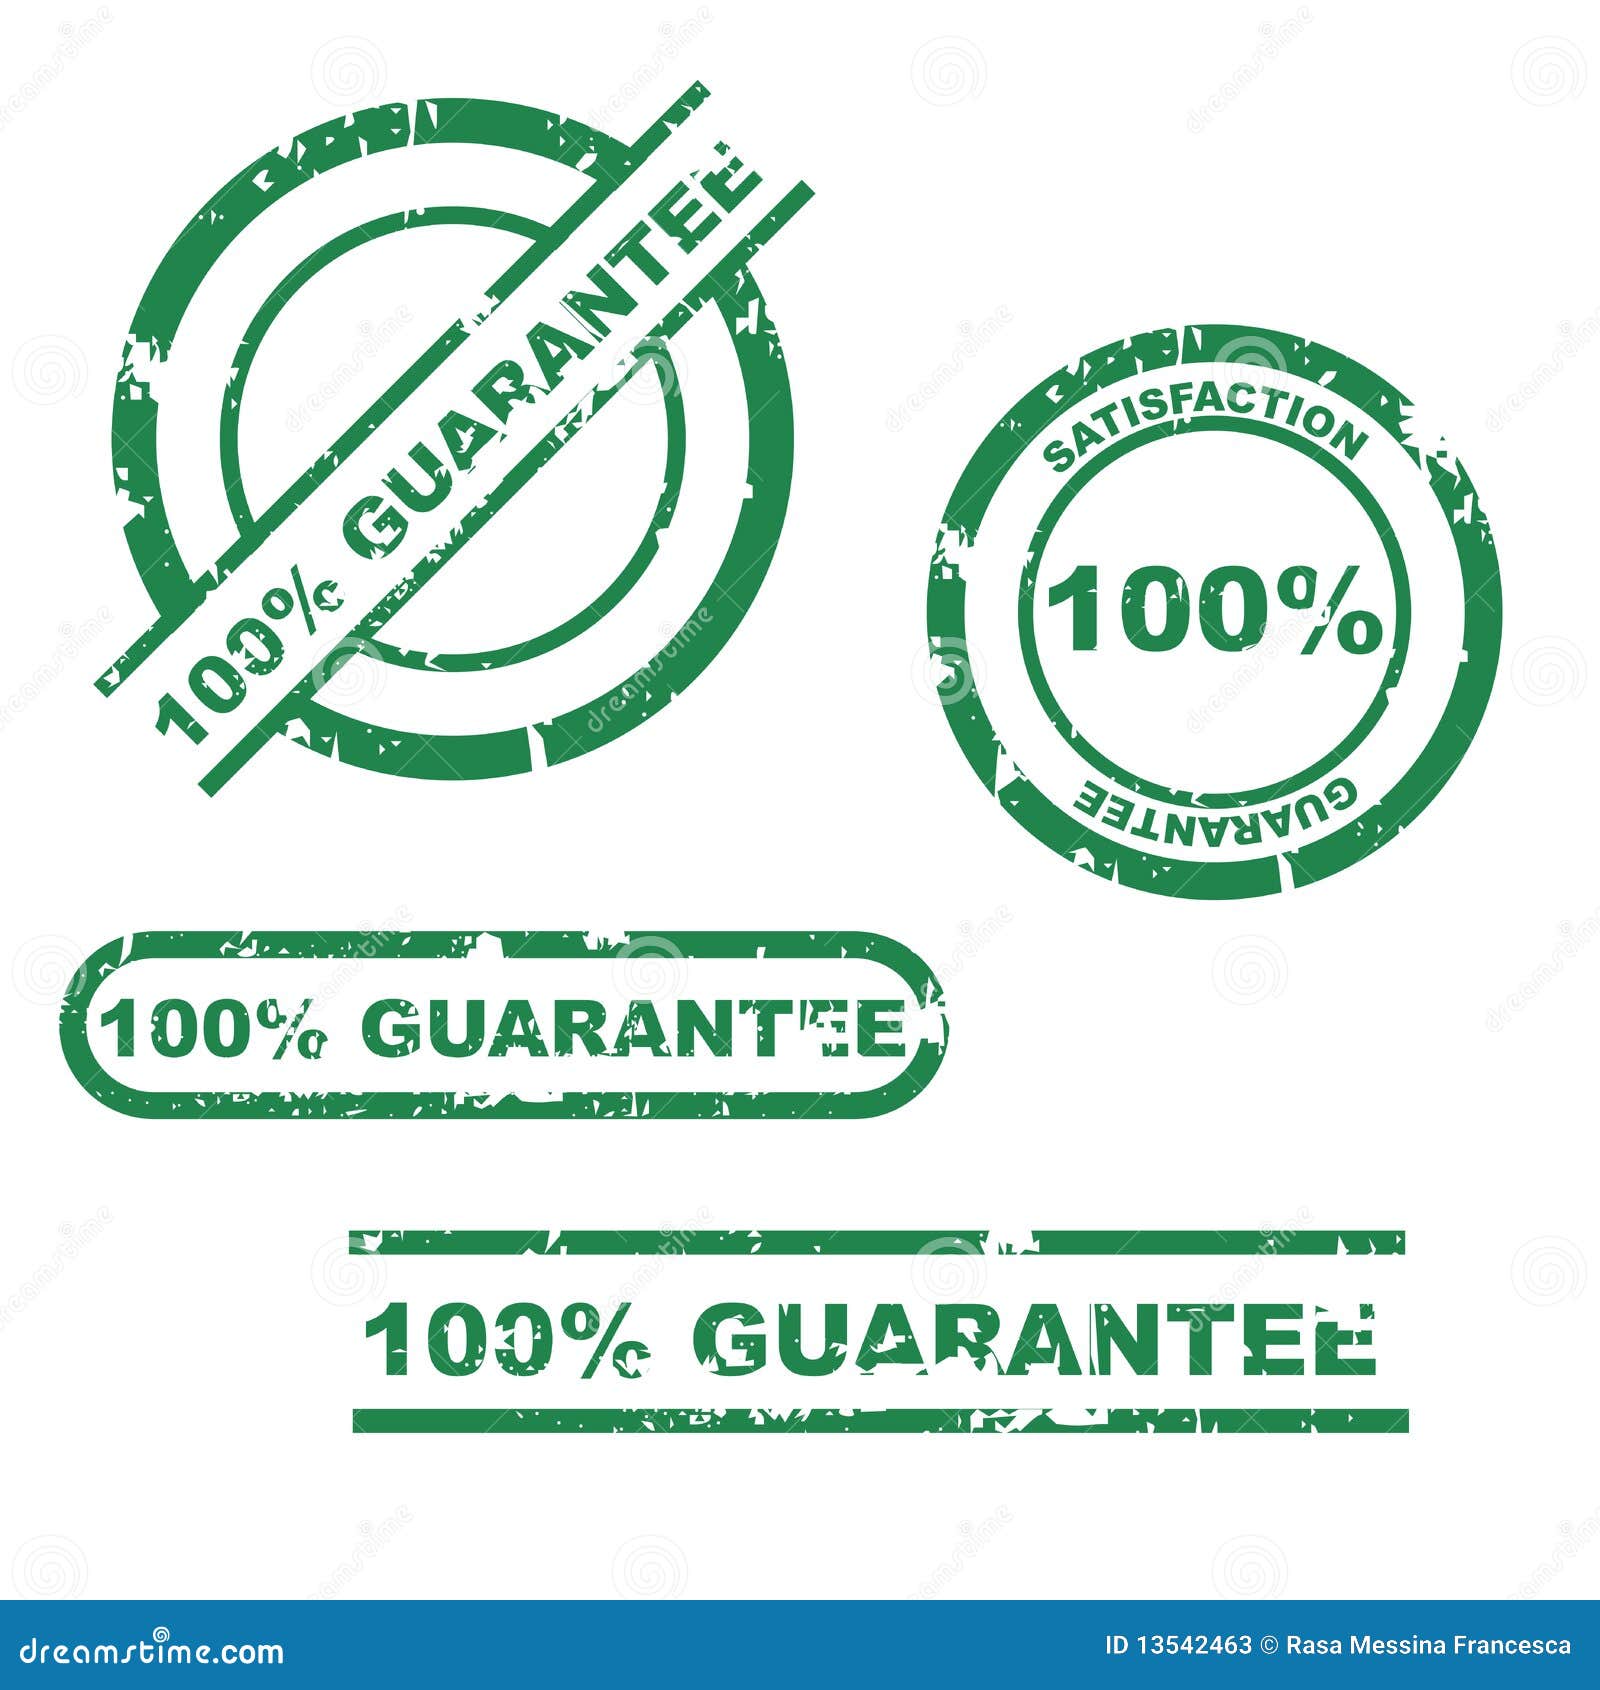 100% guarantee stamp set